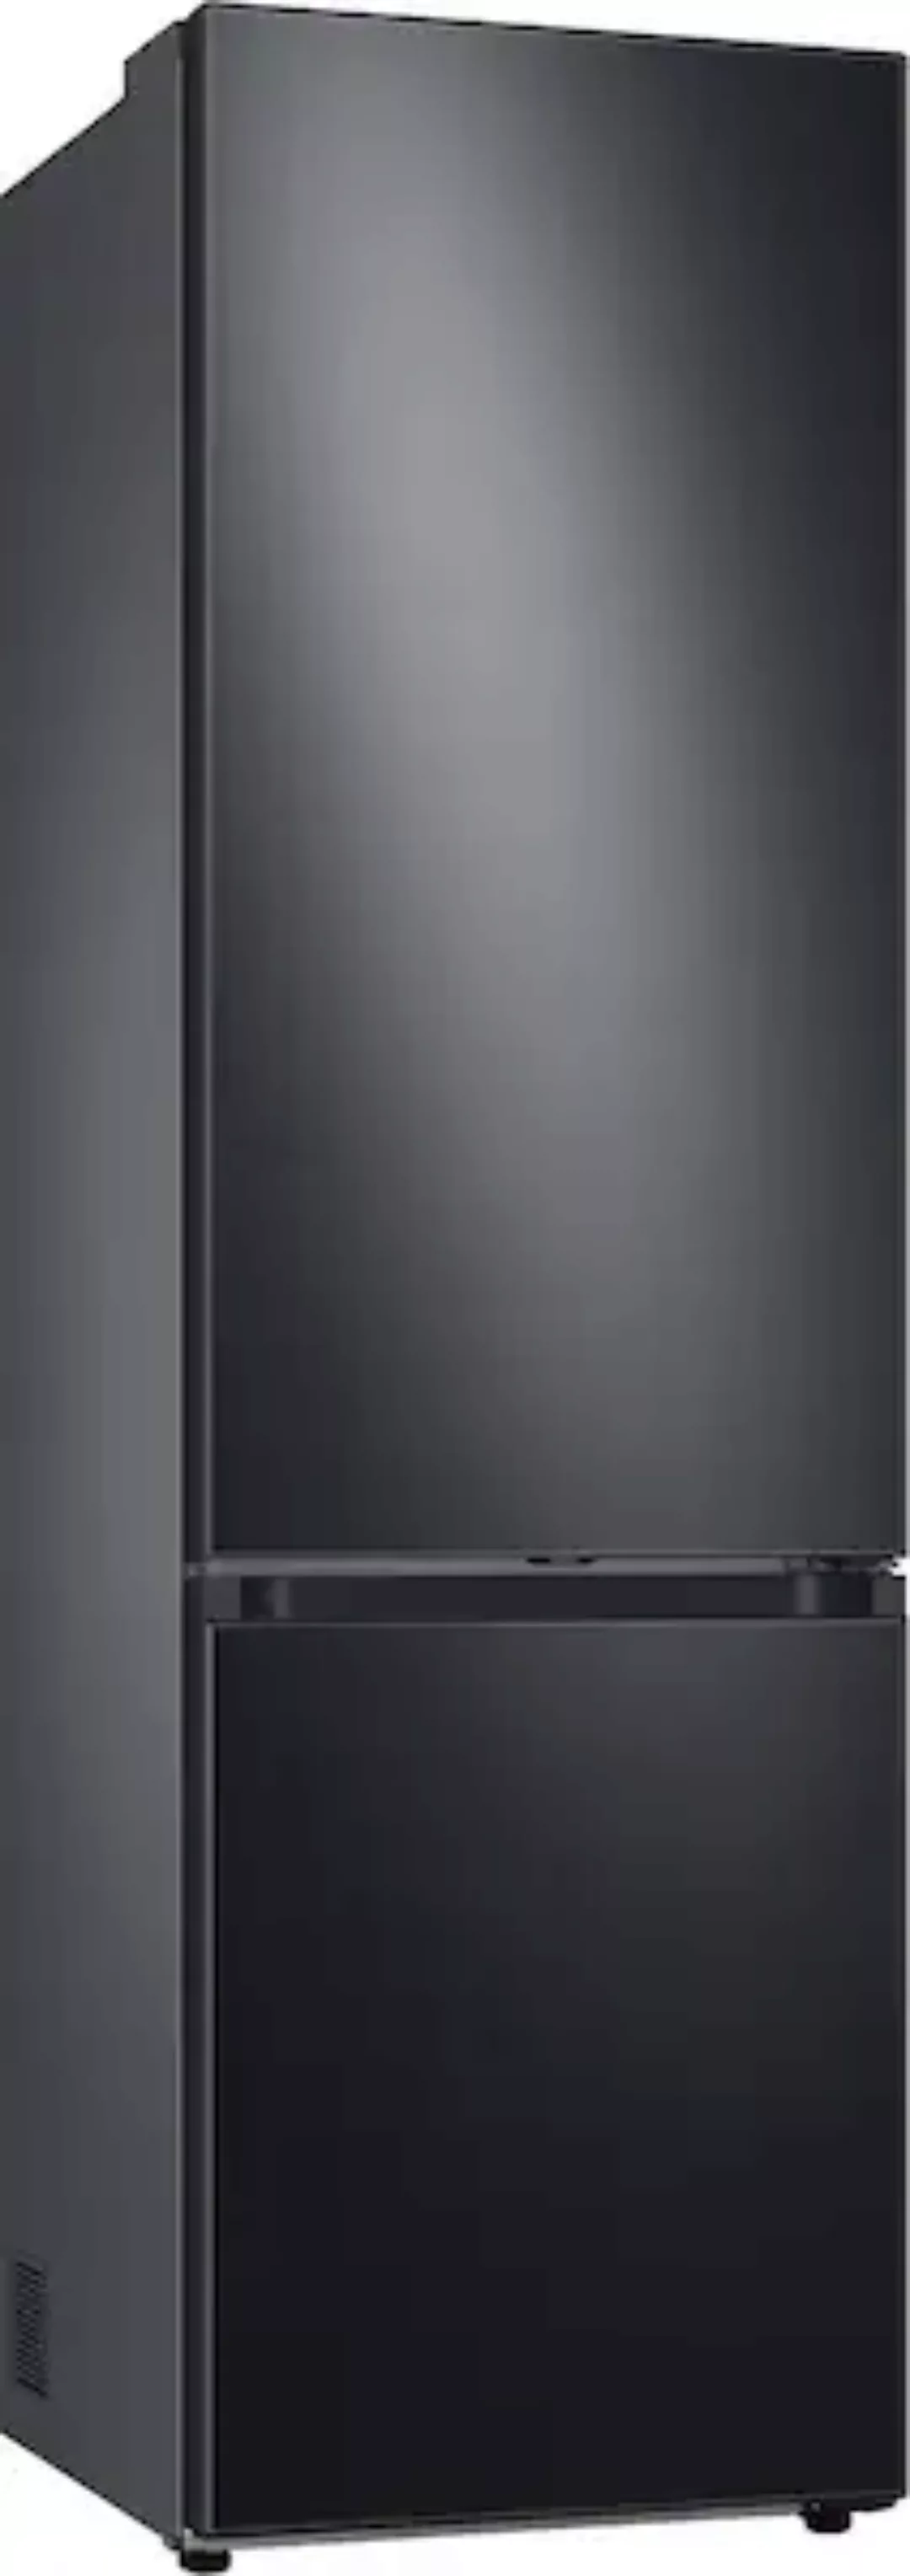 Samsung Kühl-/Gefrierkombination »RL38C7B5BB1«, RL38C7B5BB1, 203 cm hoch, 5 günstig online kaufen